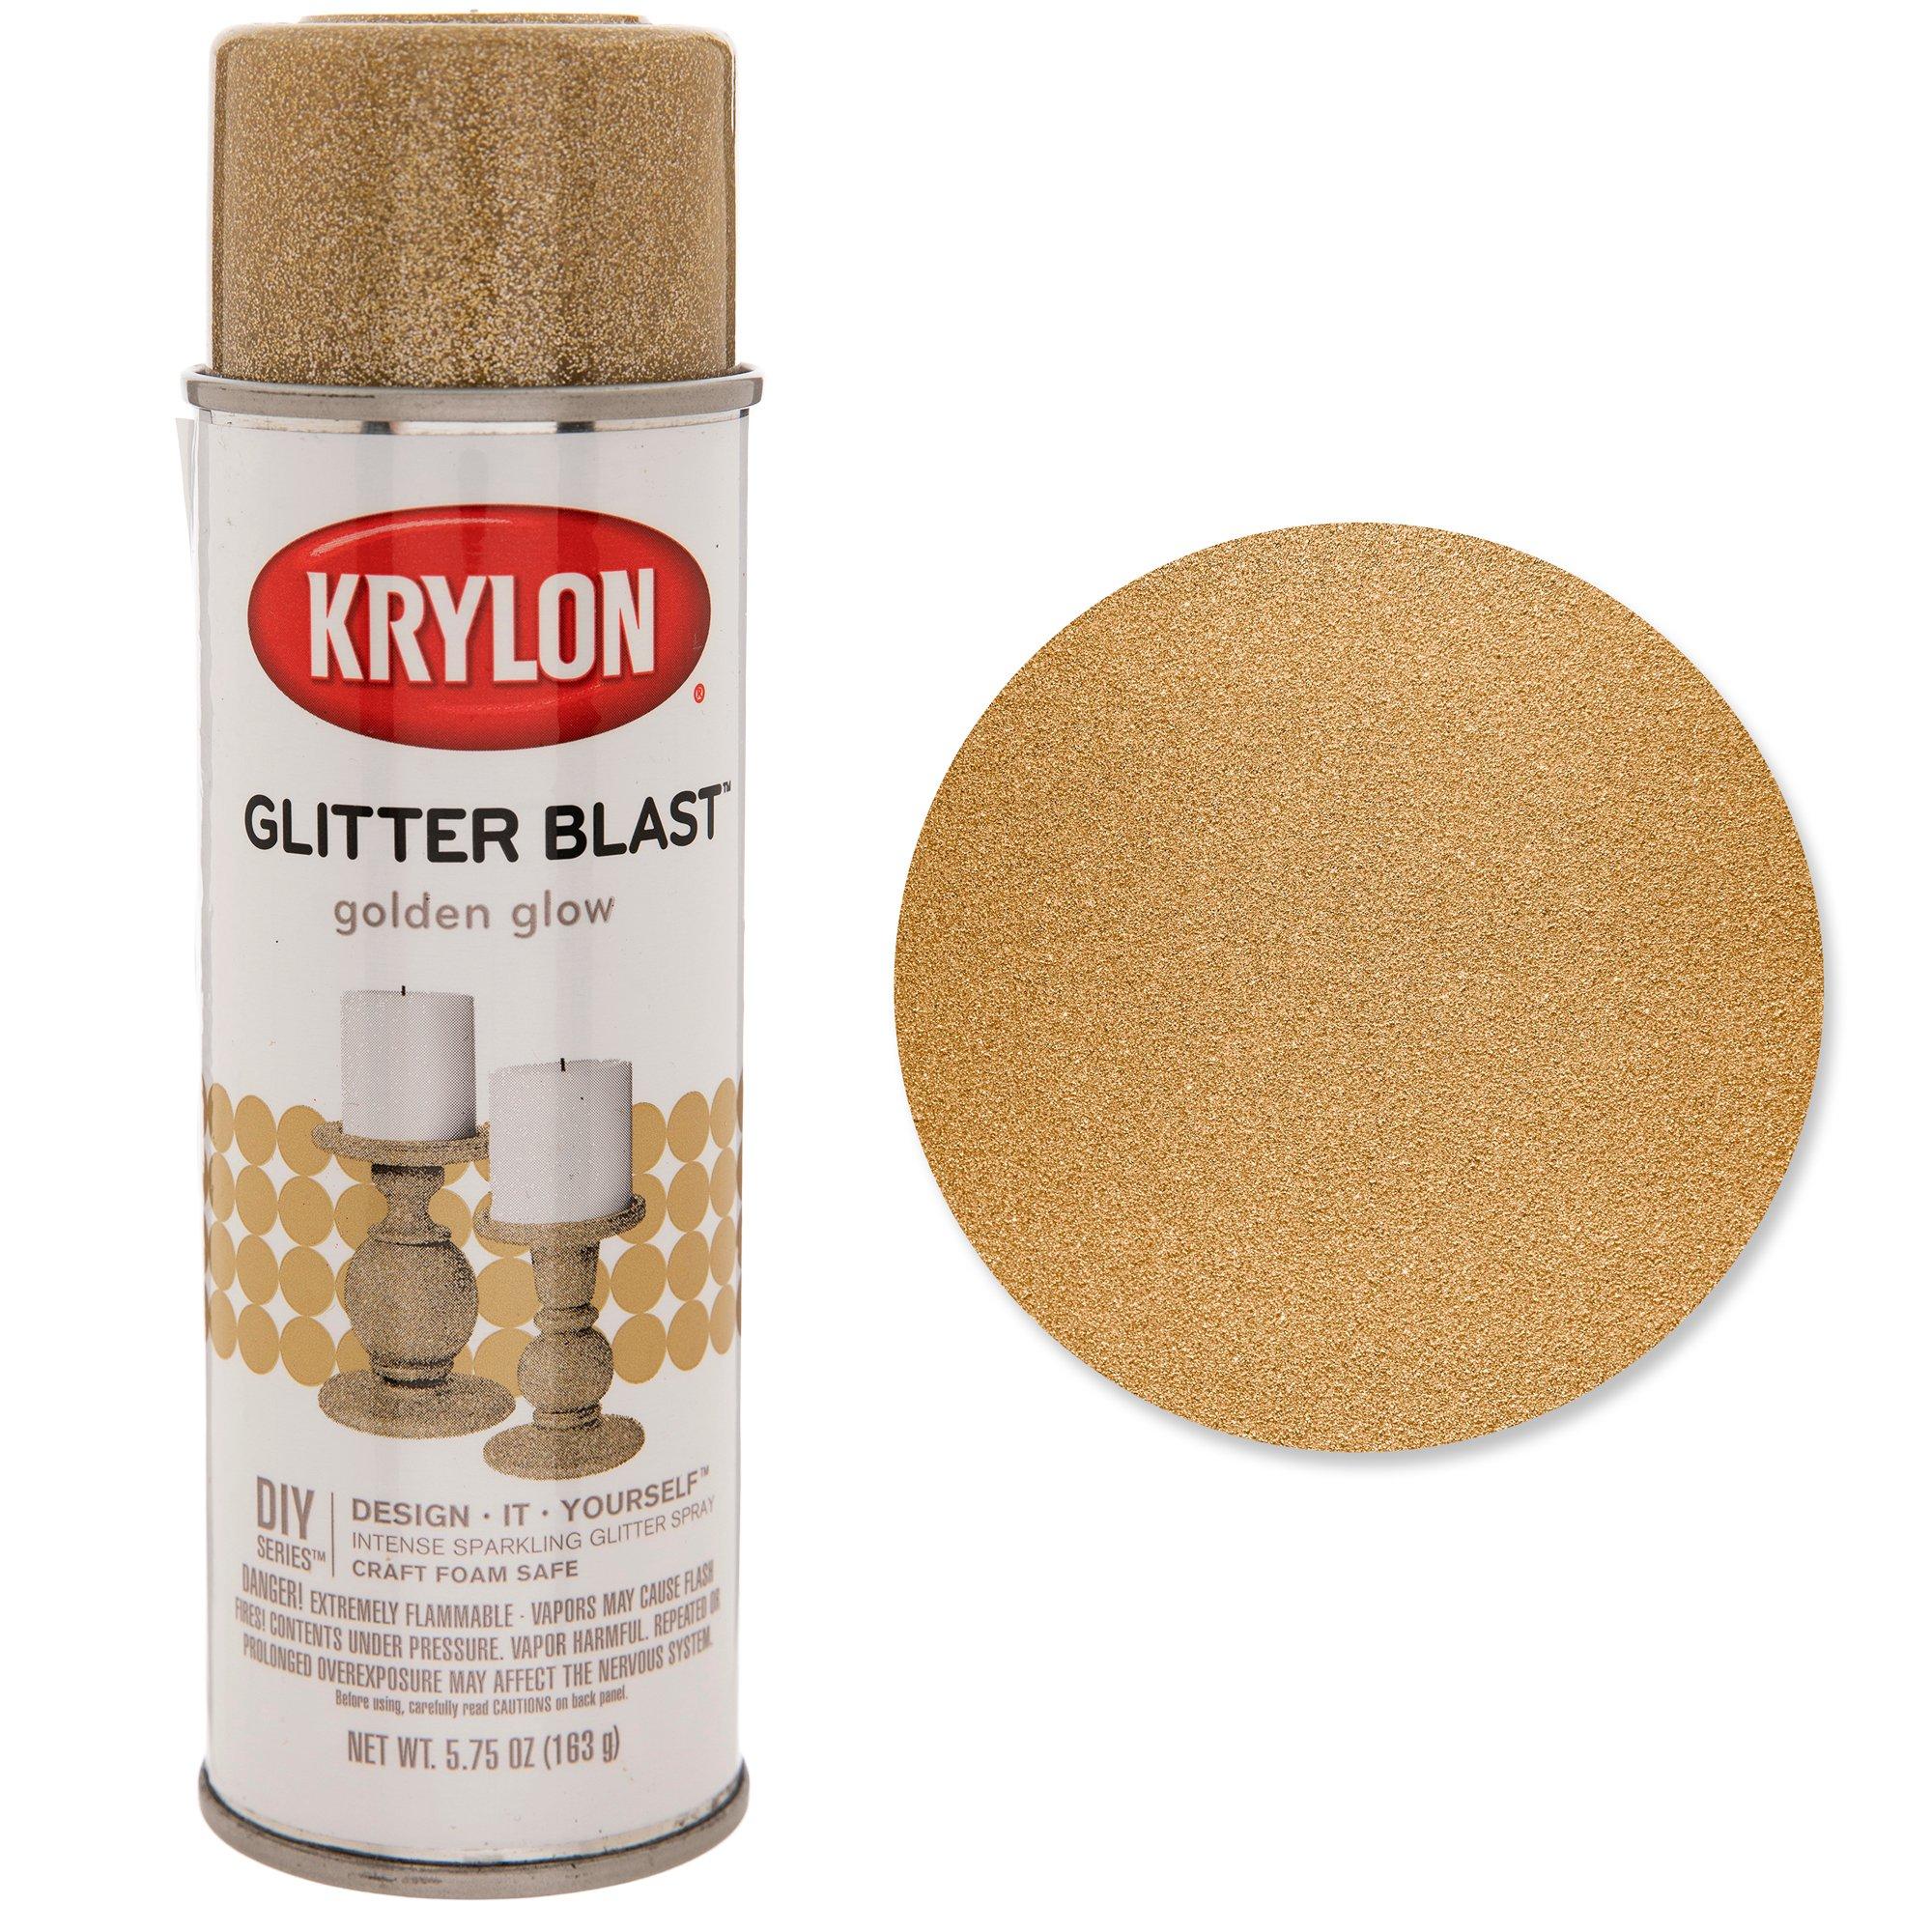  Krylon K03814A00 Glitter Blast Glitter Spray Paint for